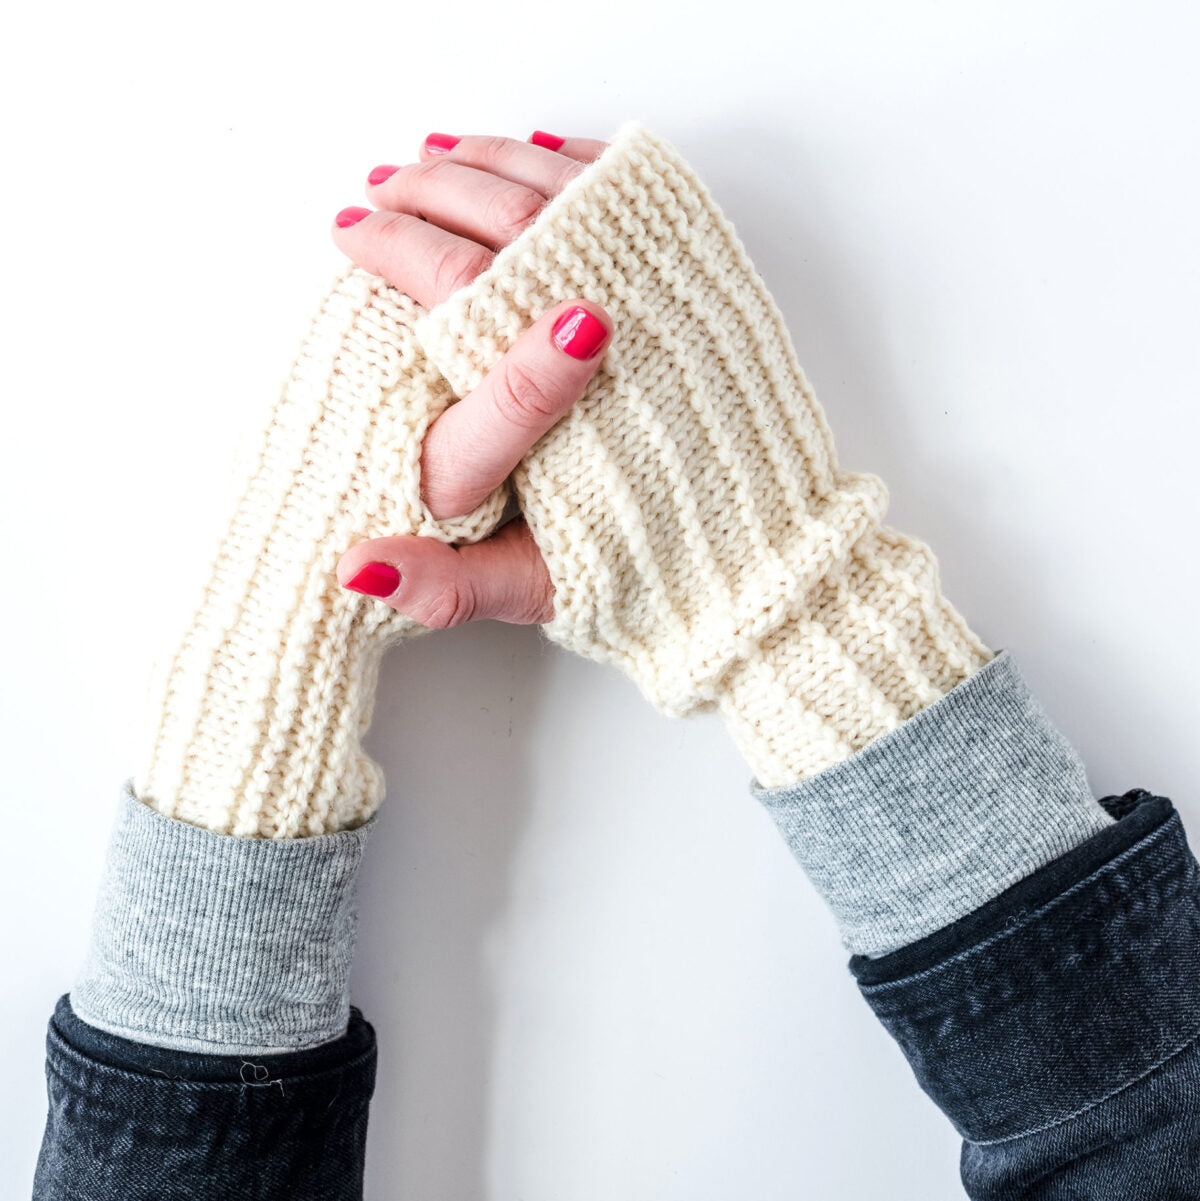 easy germantown yarn handwarmer. two hands clasped, wearing white wool handwarmers knit in kelbourne woolens' germantown yarn.